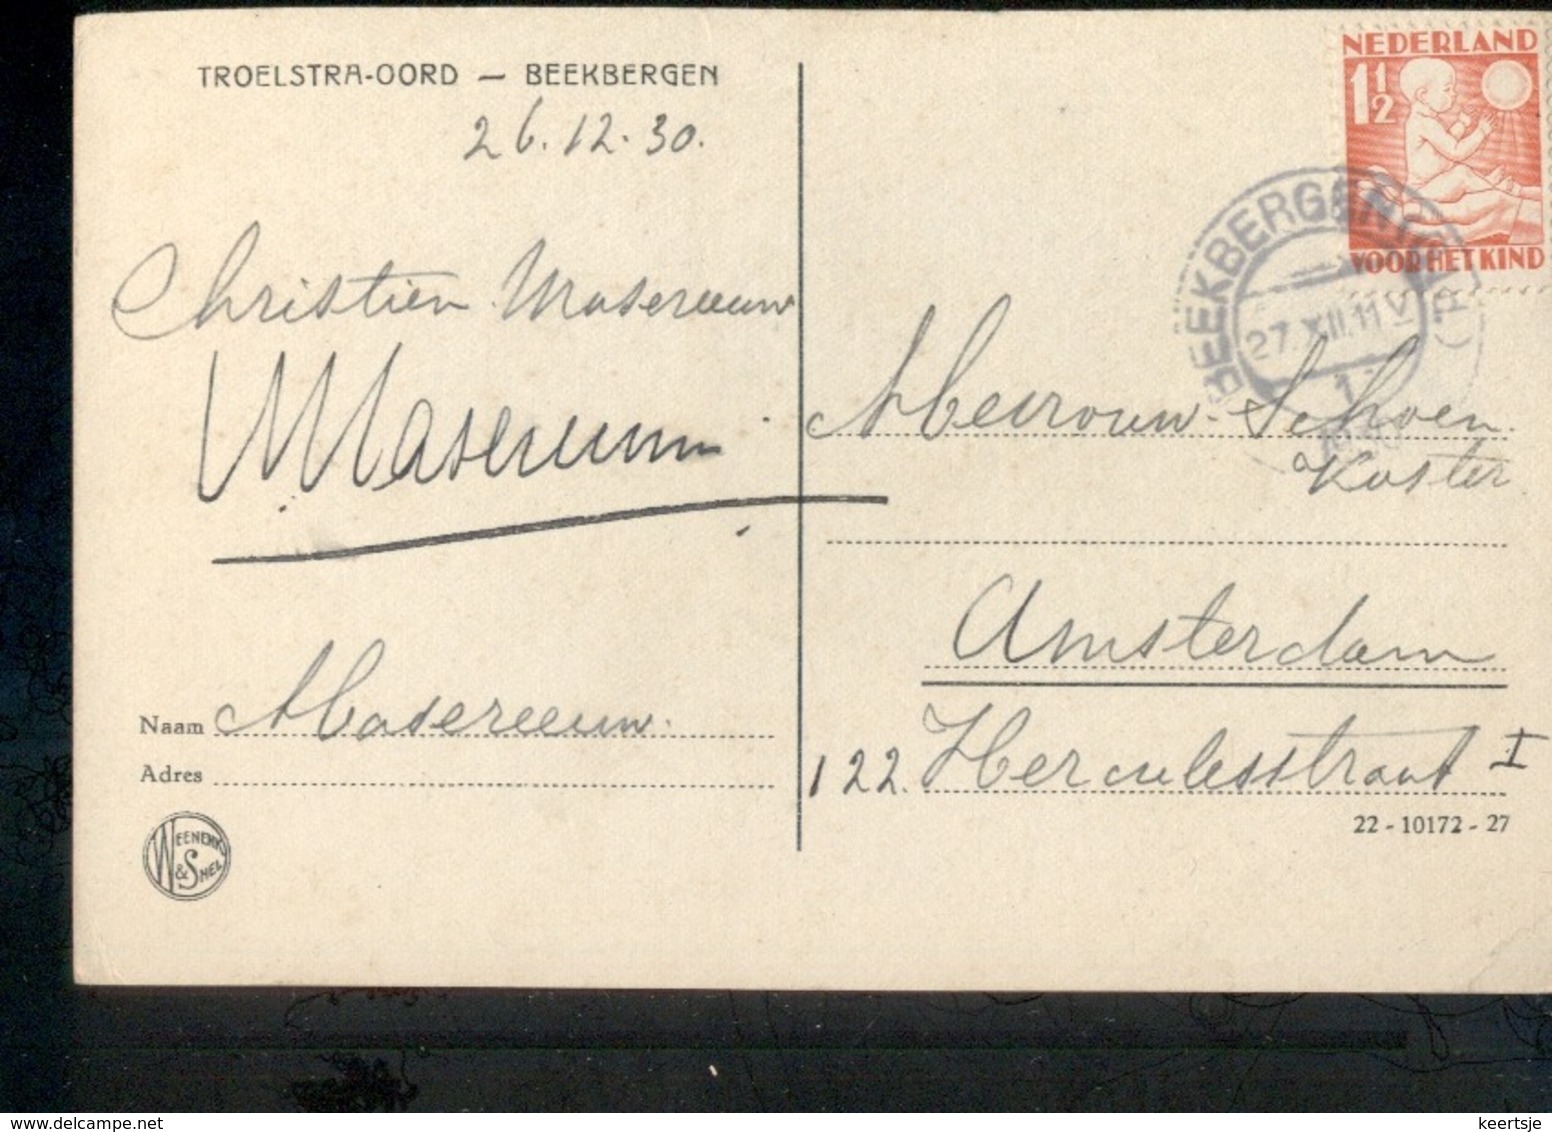 Beekbergen - 1930 - Troelstra Oord - Marcofilia